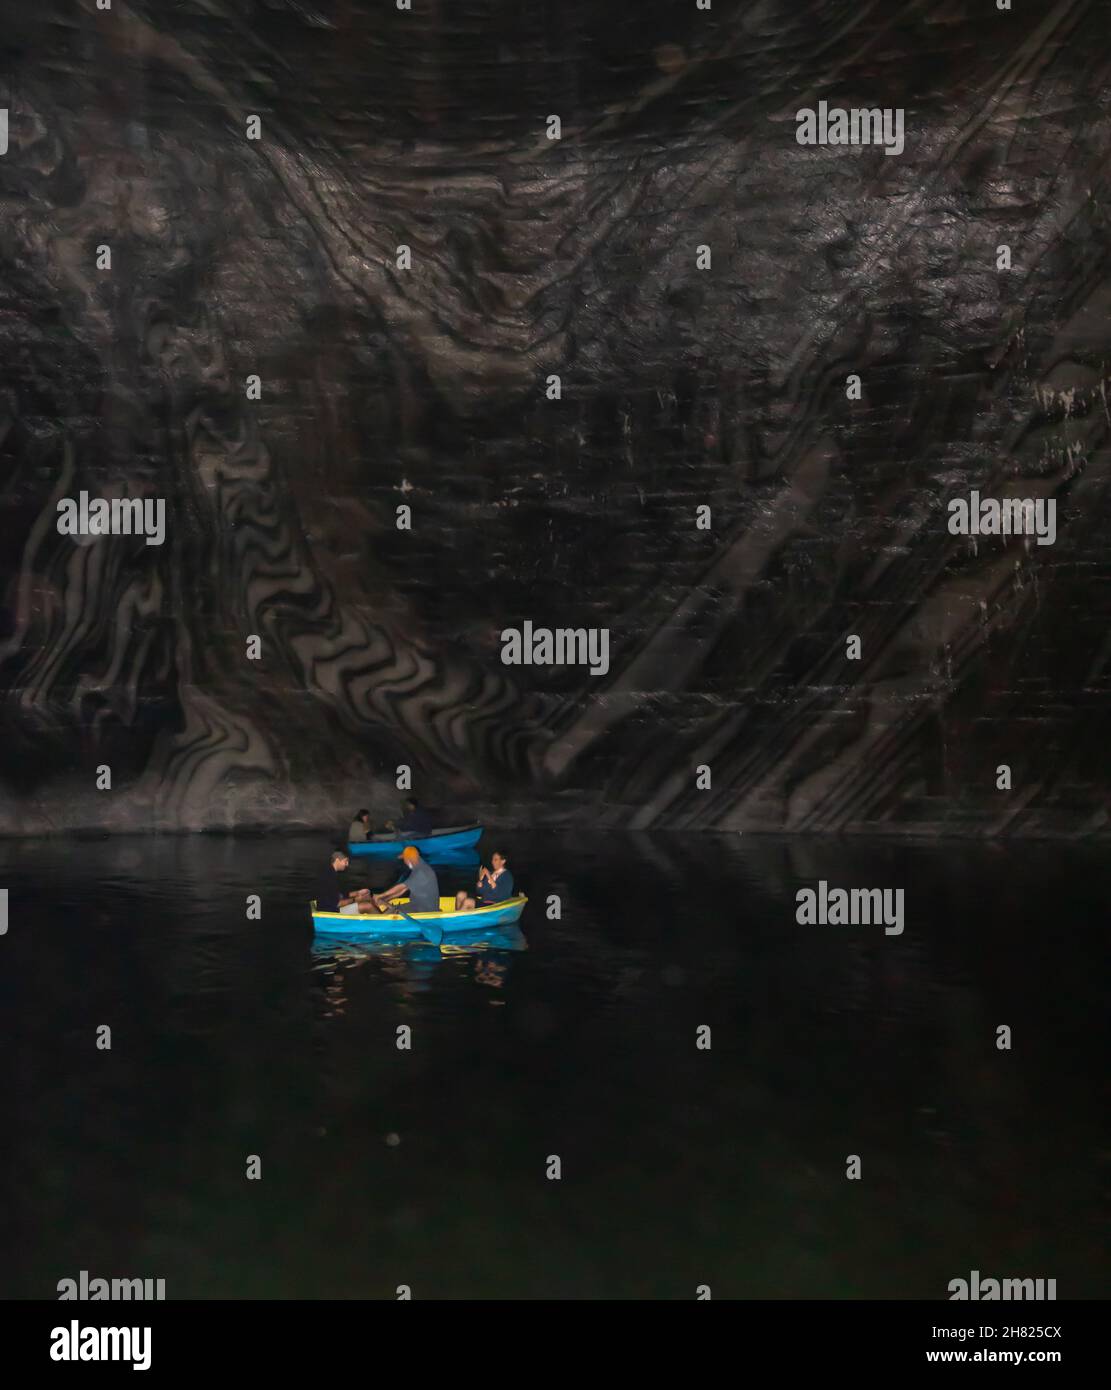 Turda, Rumänien-24. August 2021: Foto aus dem Inneren des Salzbergwerks von Turda, in dem Menschen in Booten auf dem See, umgeben von Salzwänden, zu sehen sind Stockfoto